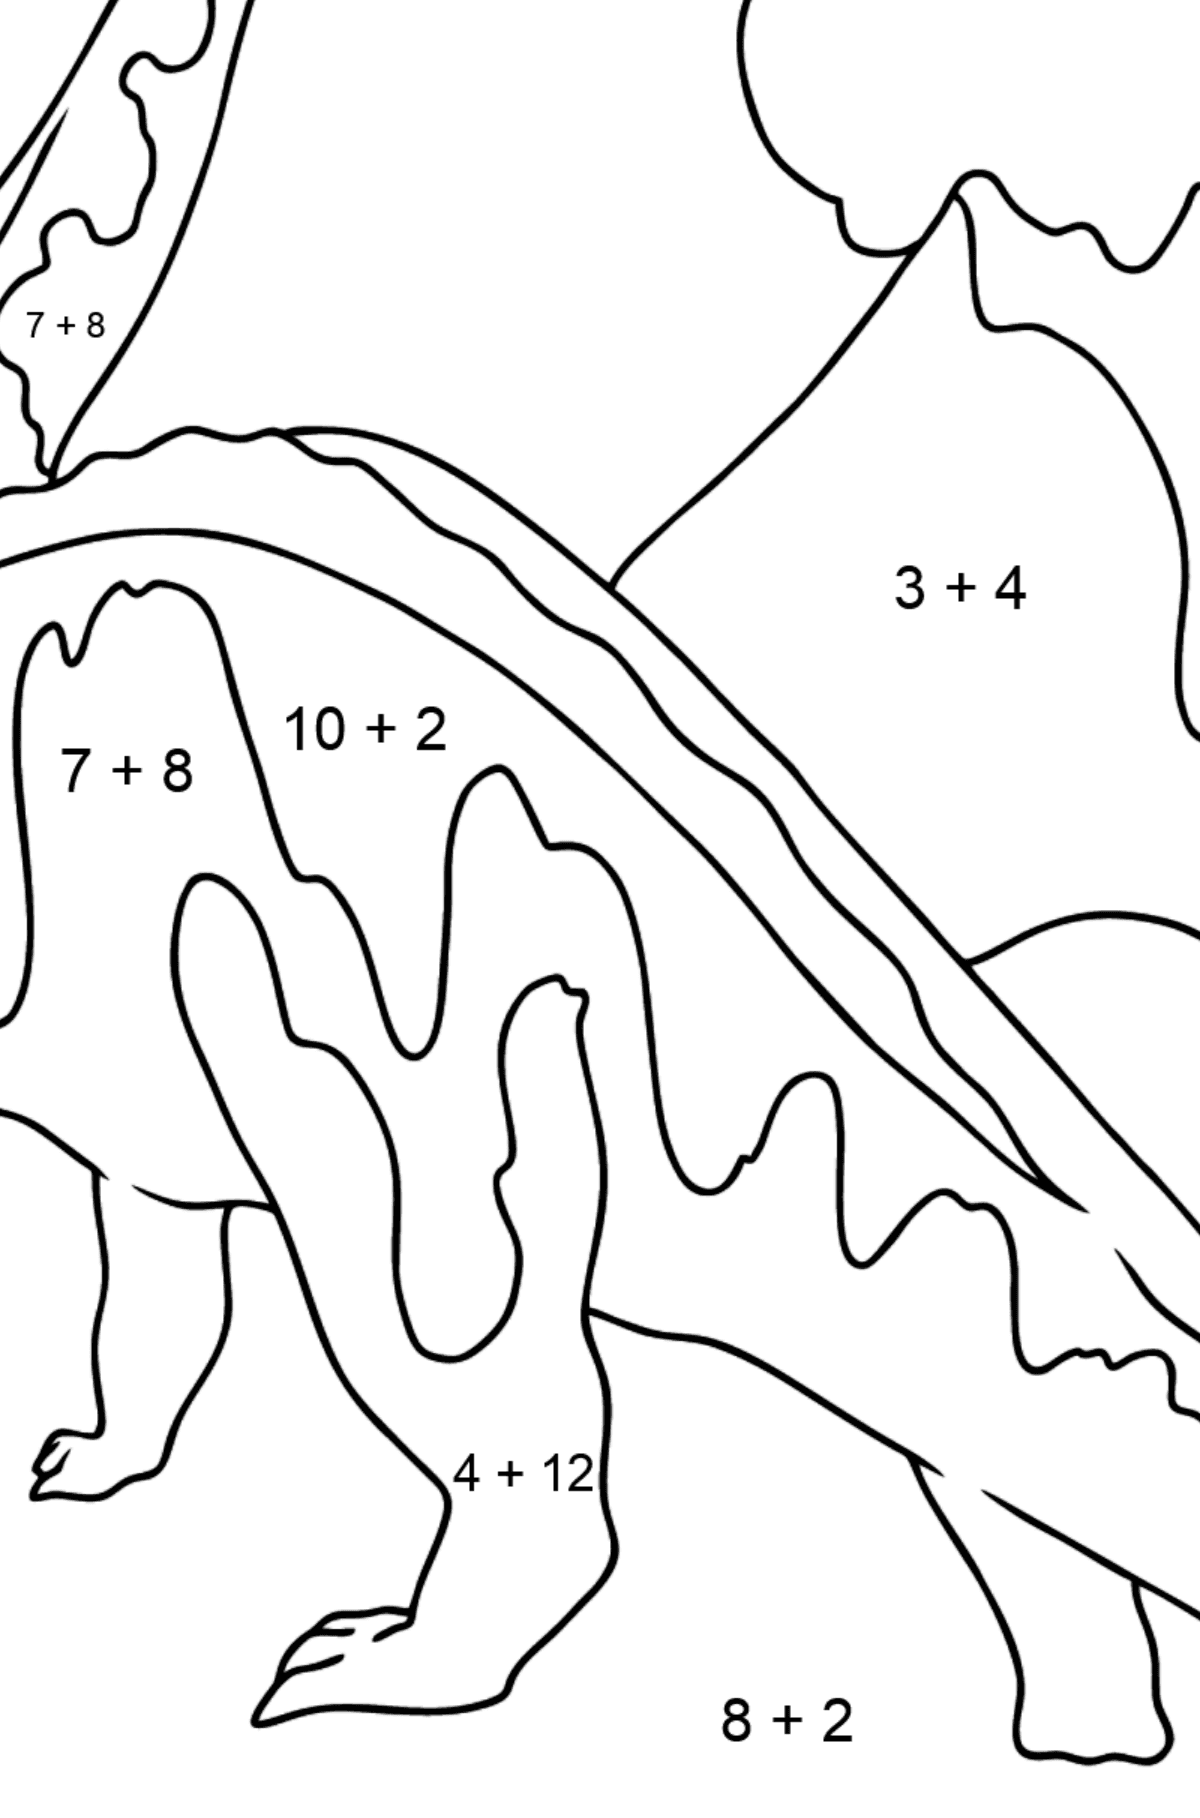 Brontosaurus Malvorlagen - Mathe Ausmalbilder - Addition für Kinder